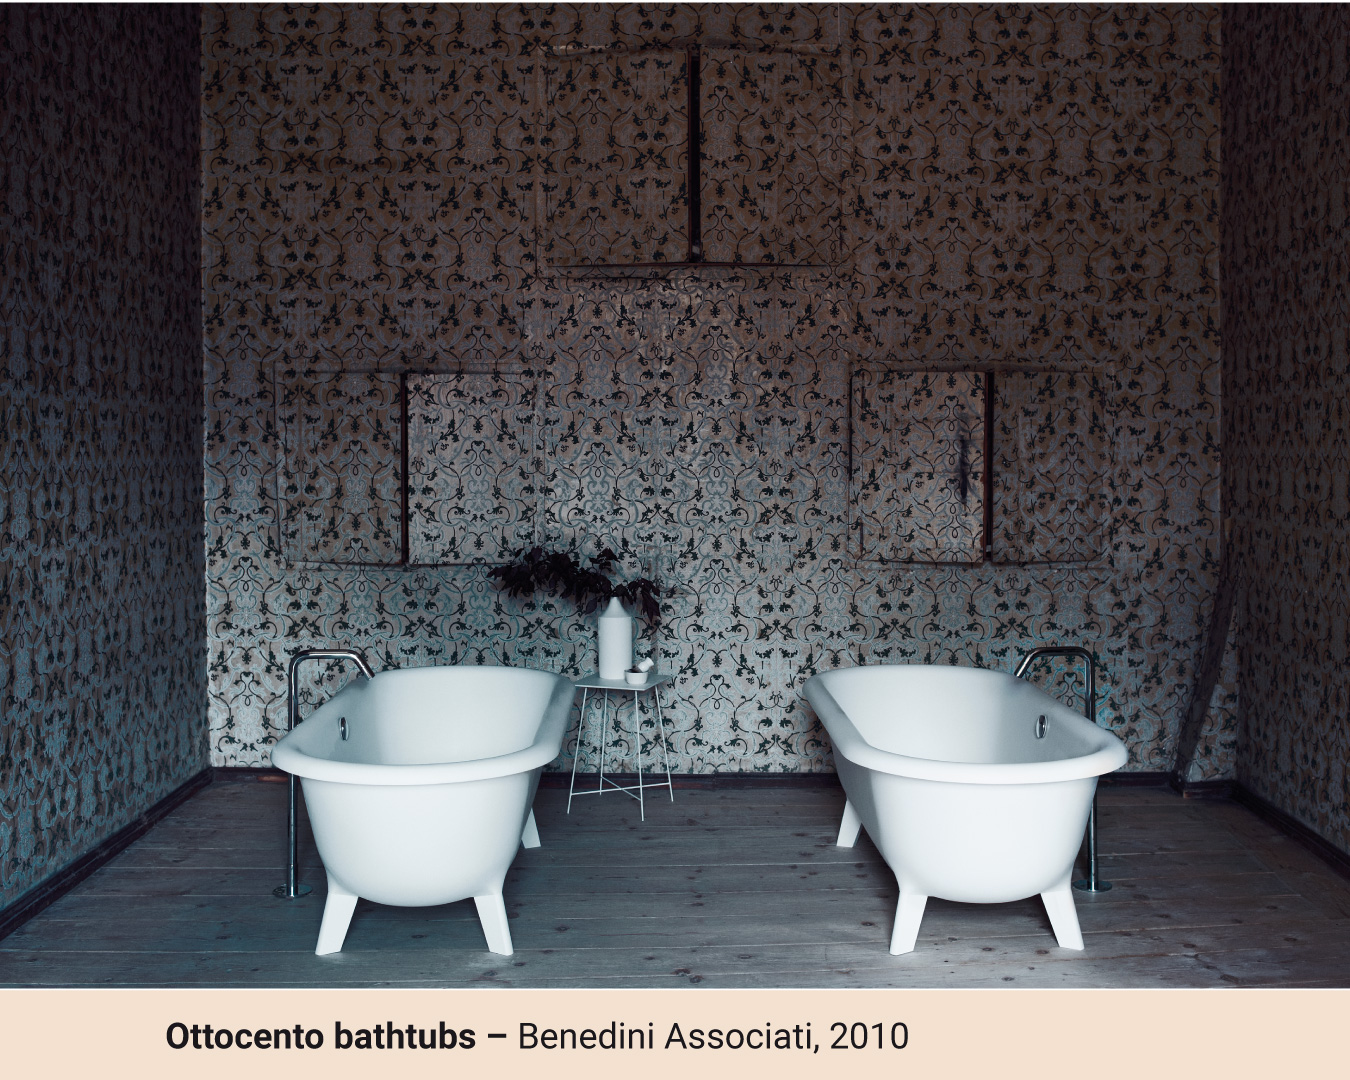 OTTOCENTO frittstående badekar i klassisk design